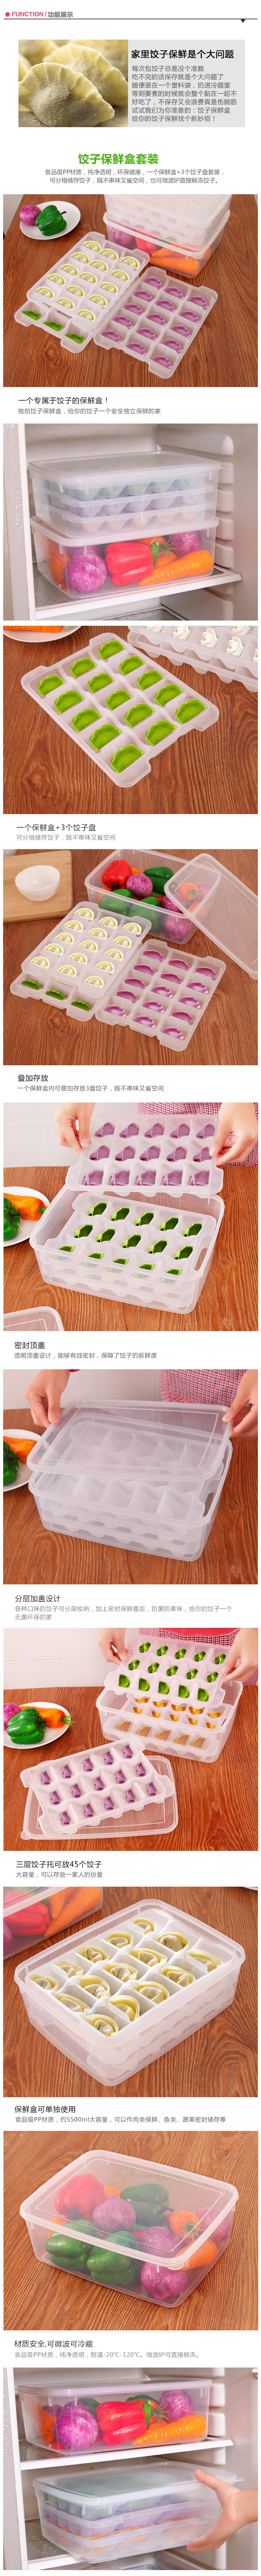 不粘底冷凍餛飩餃子盒冰箱保鮮盒收納盒可微波解凍盒分格餃子托盤